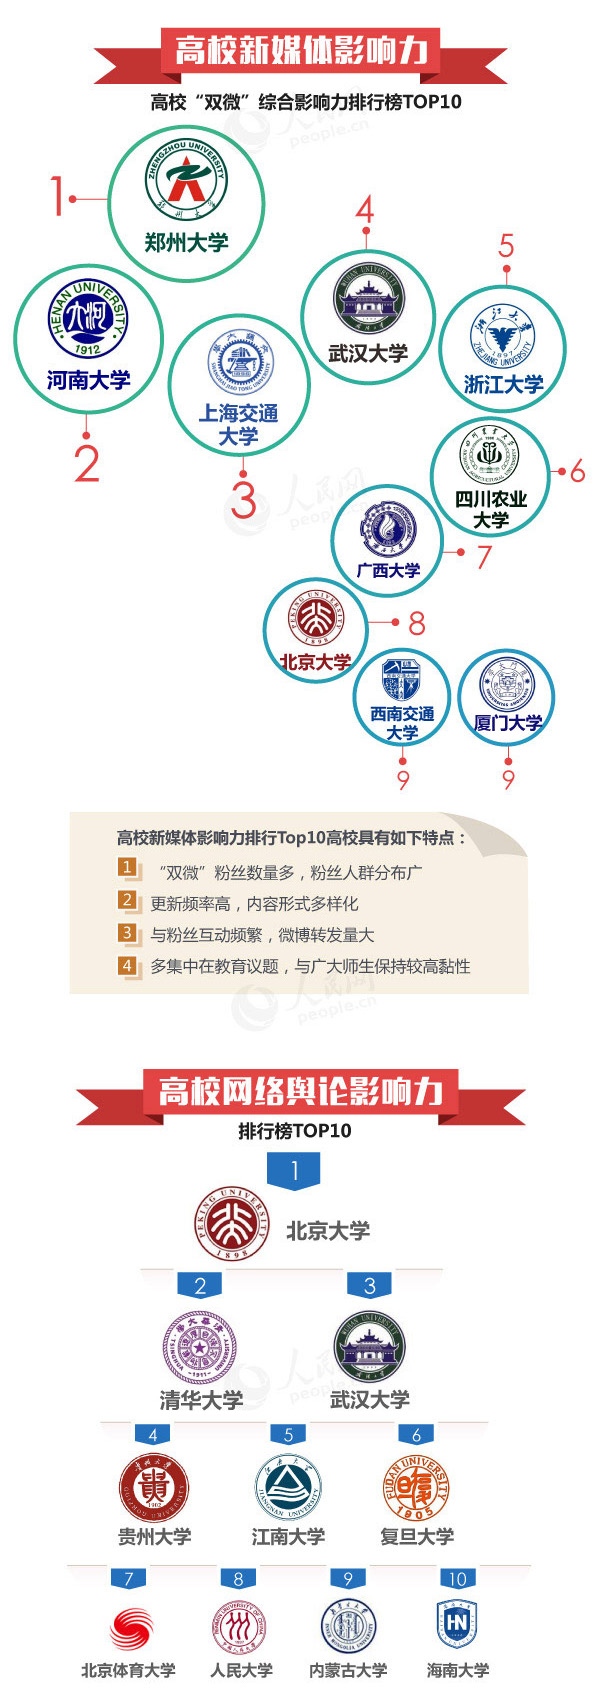 中国高校社会影响力排行榜发布，北大清华武大位列三甲